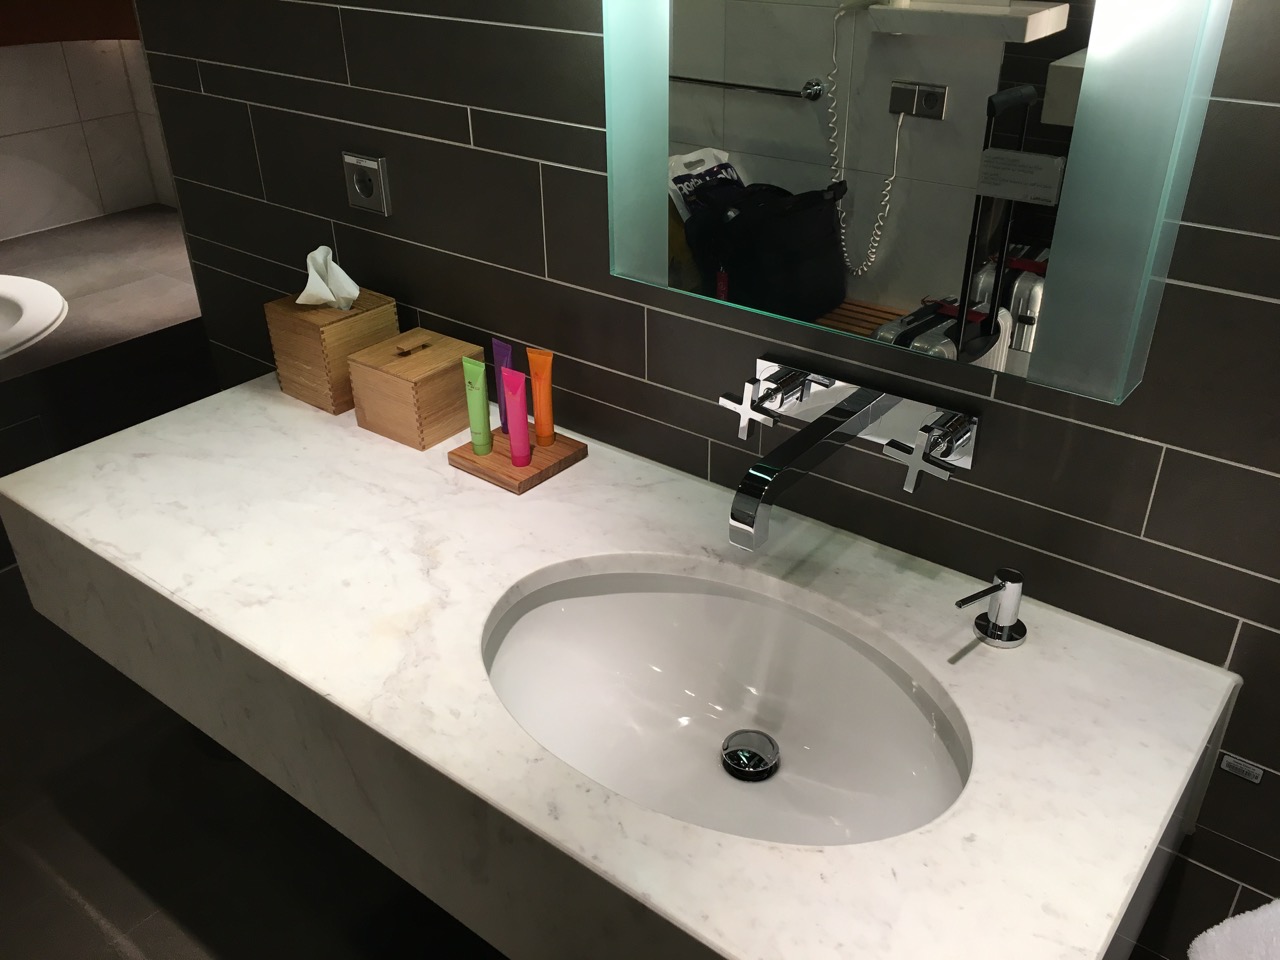 LH First Class Terminal Bath/Shower Room